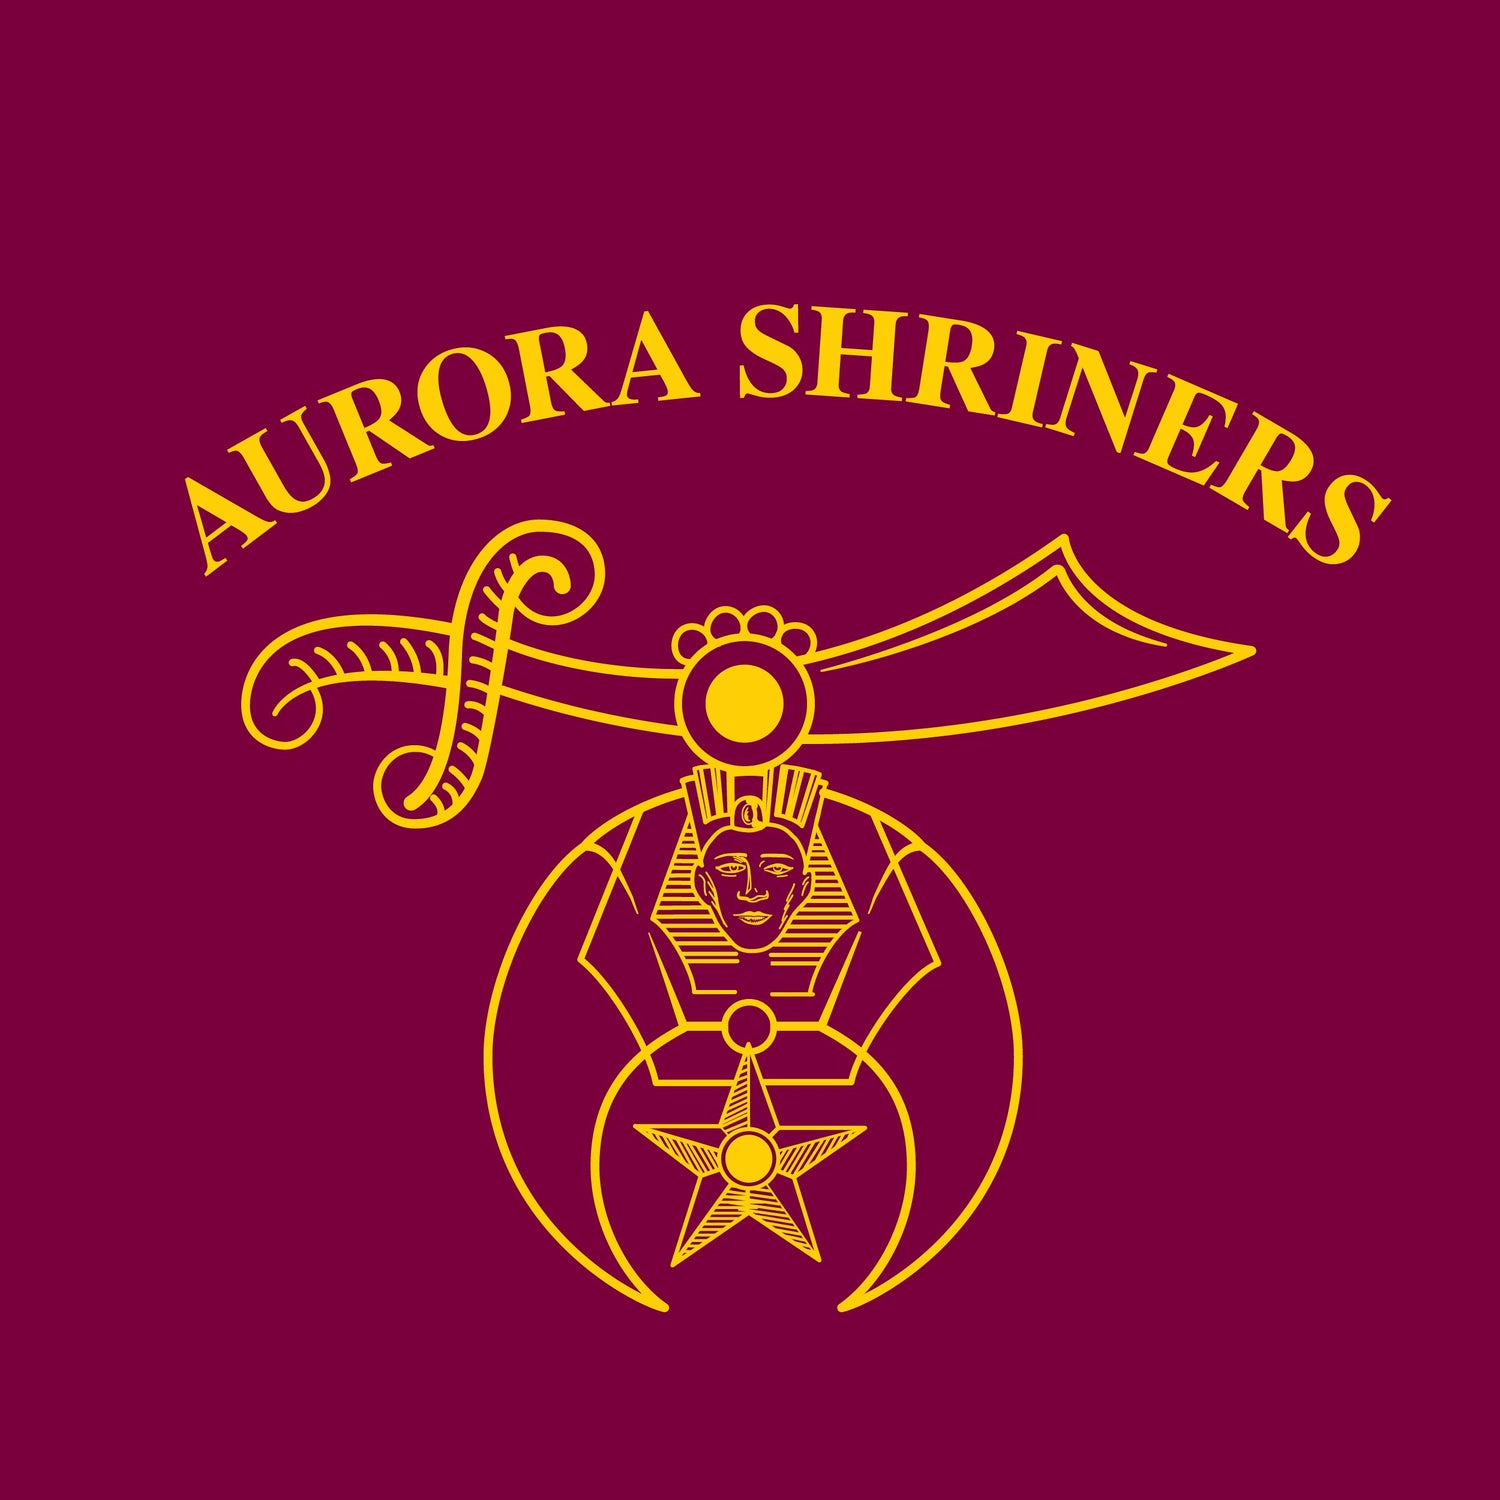 Aurora Shrine Club OV - Medinah Shriners